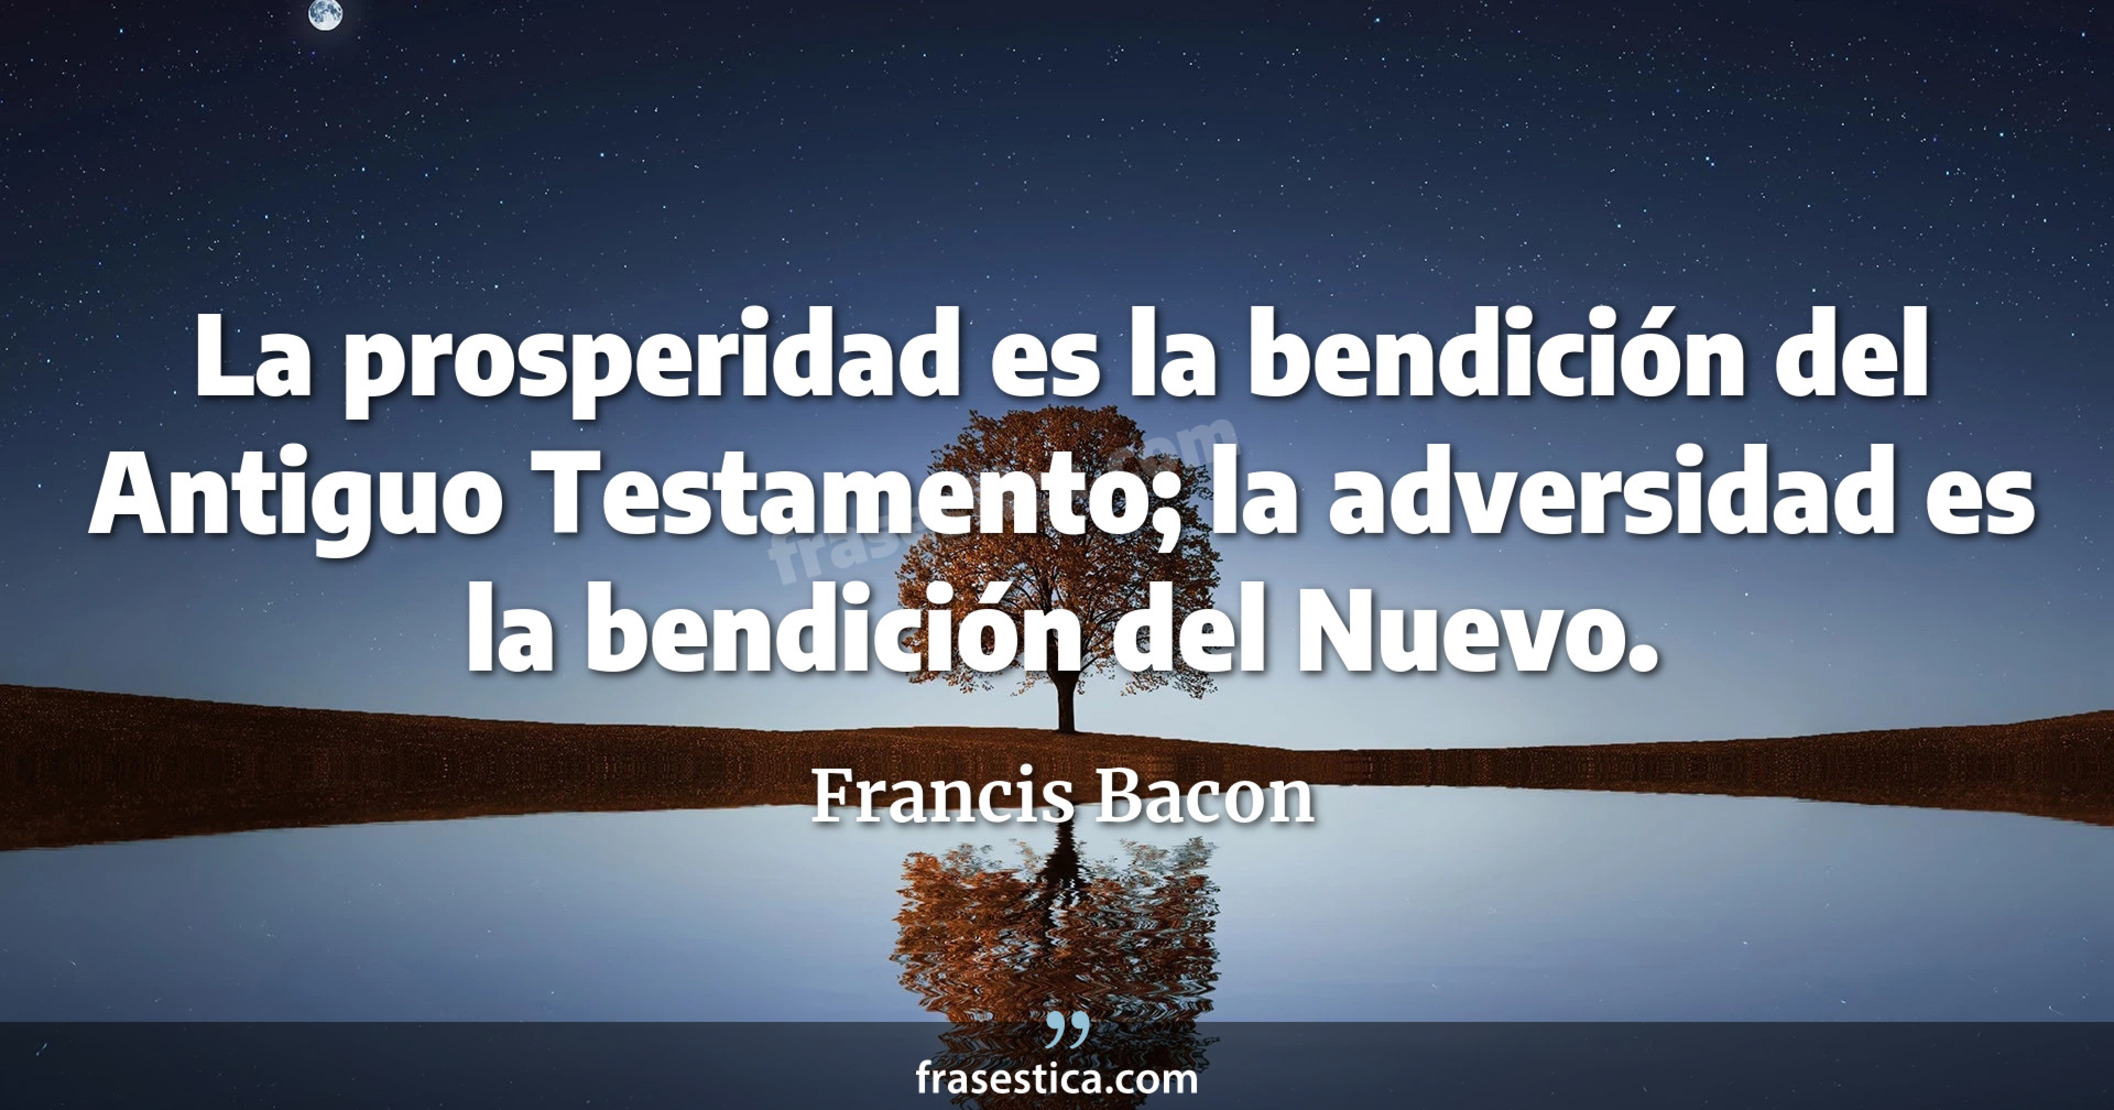 La prosperidad es la bendición del Antiguo Testamento; la adversidad es la bendición del Nuevo. - Francis Bacon